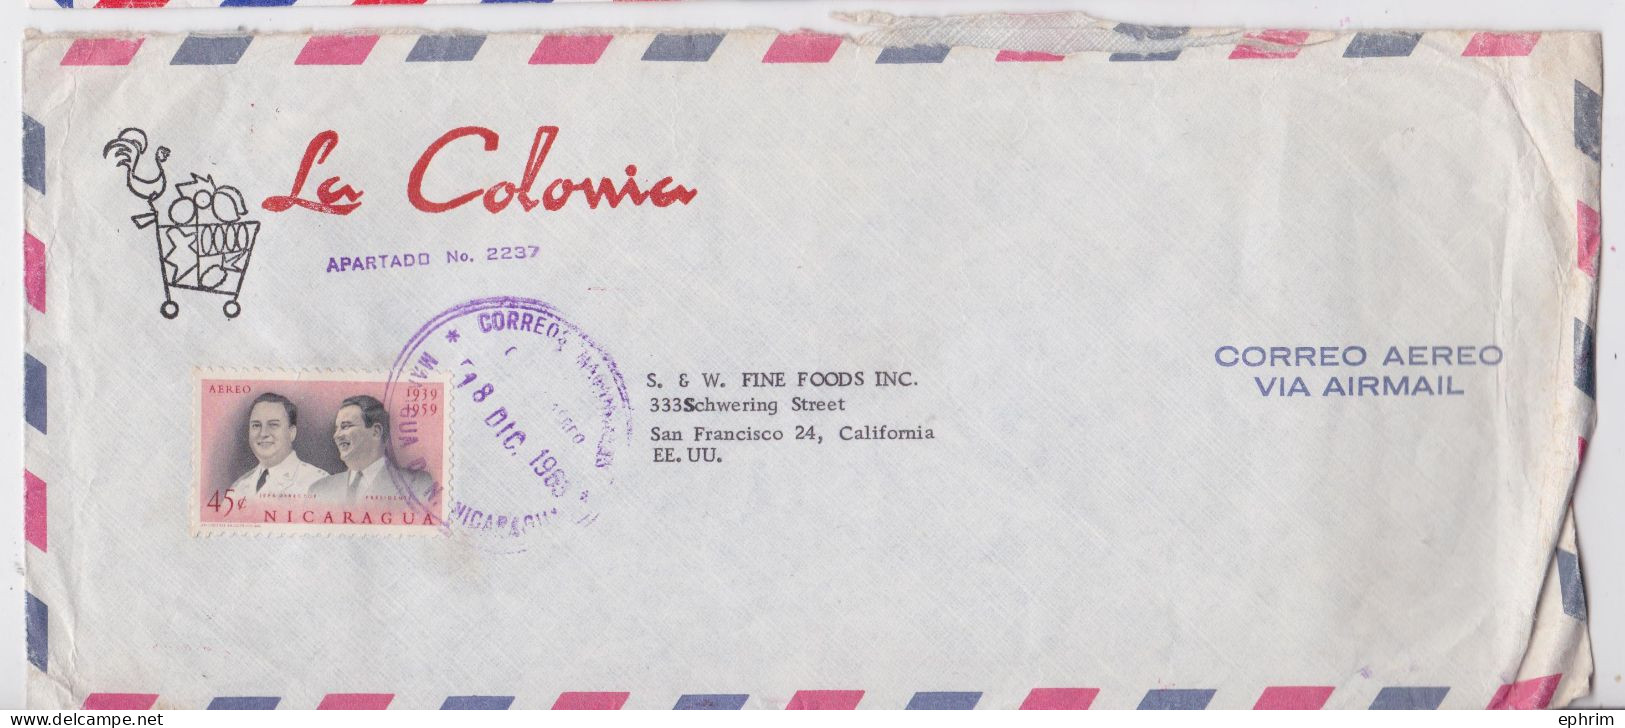 Nicaragua La Colonia Managua Lettre Timbre Presidente Stamp Air Mail Cover Sello Correo Aereo - Nicaragua